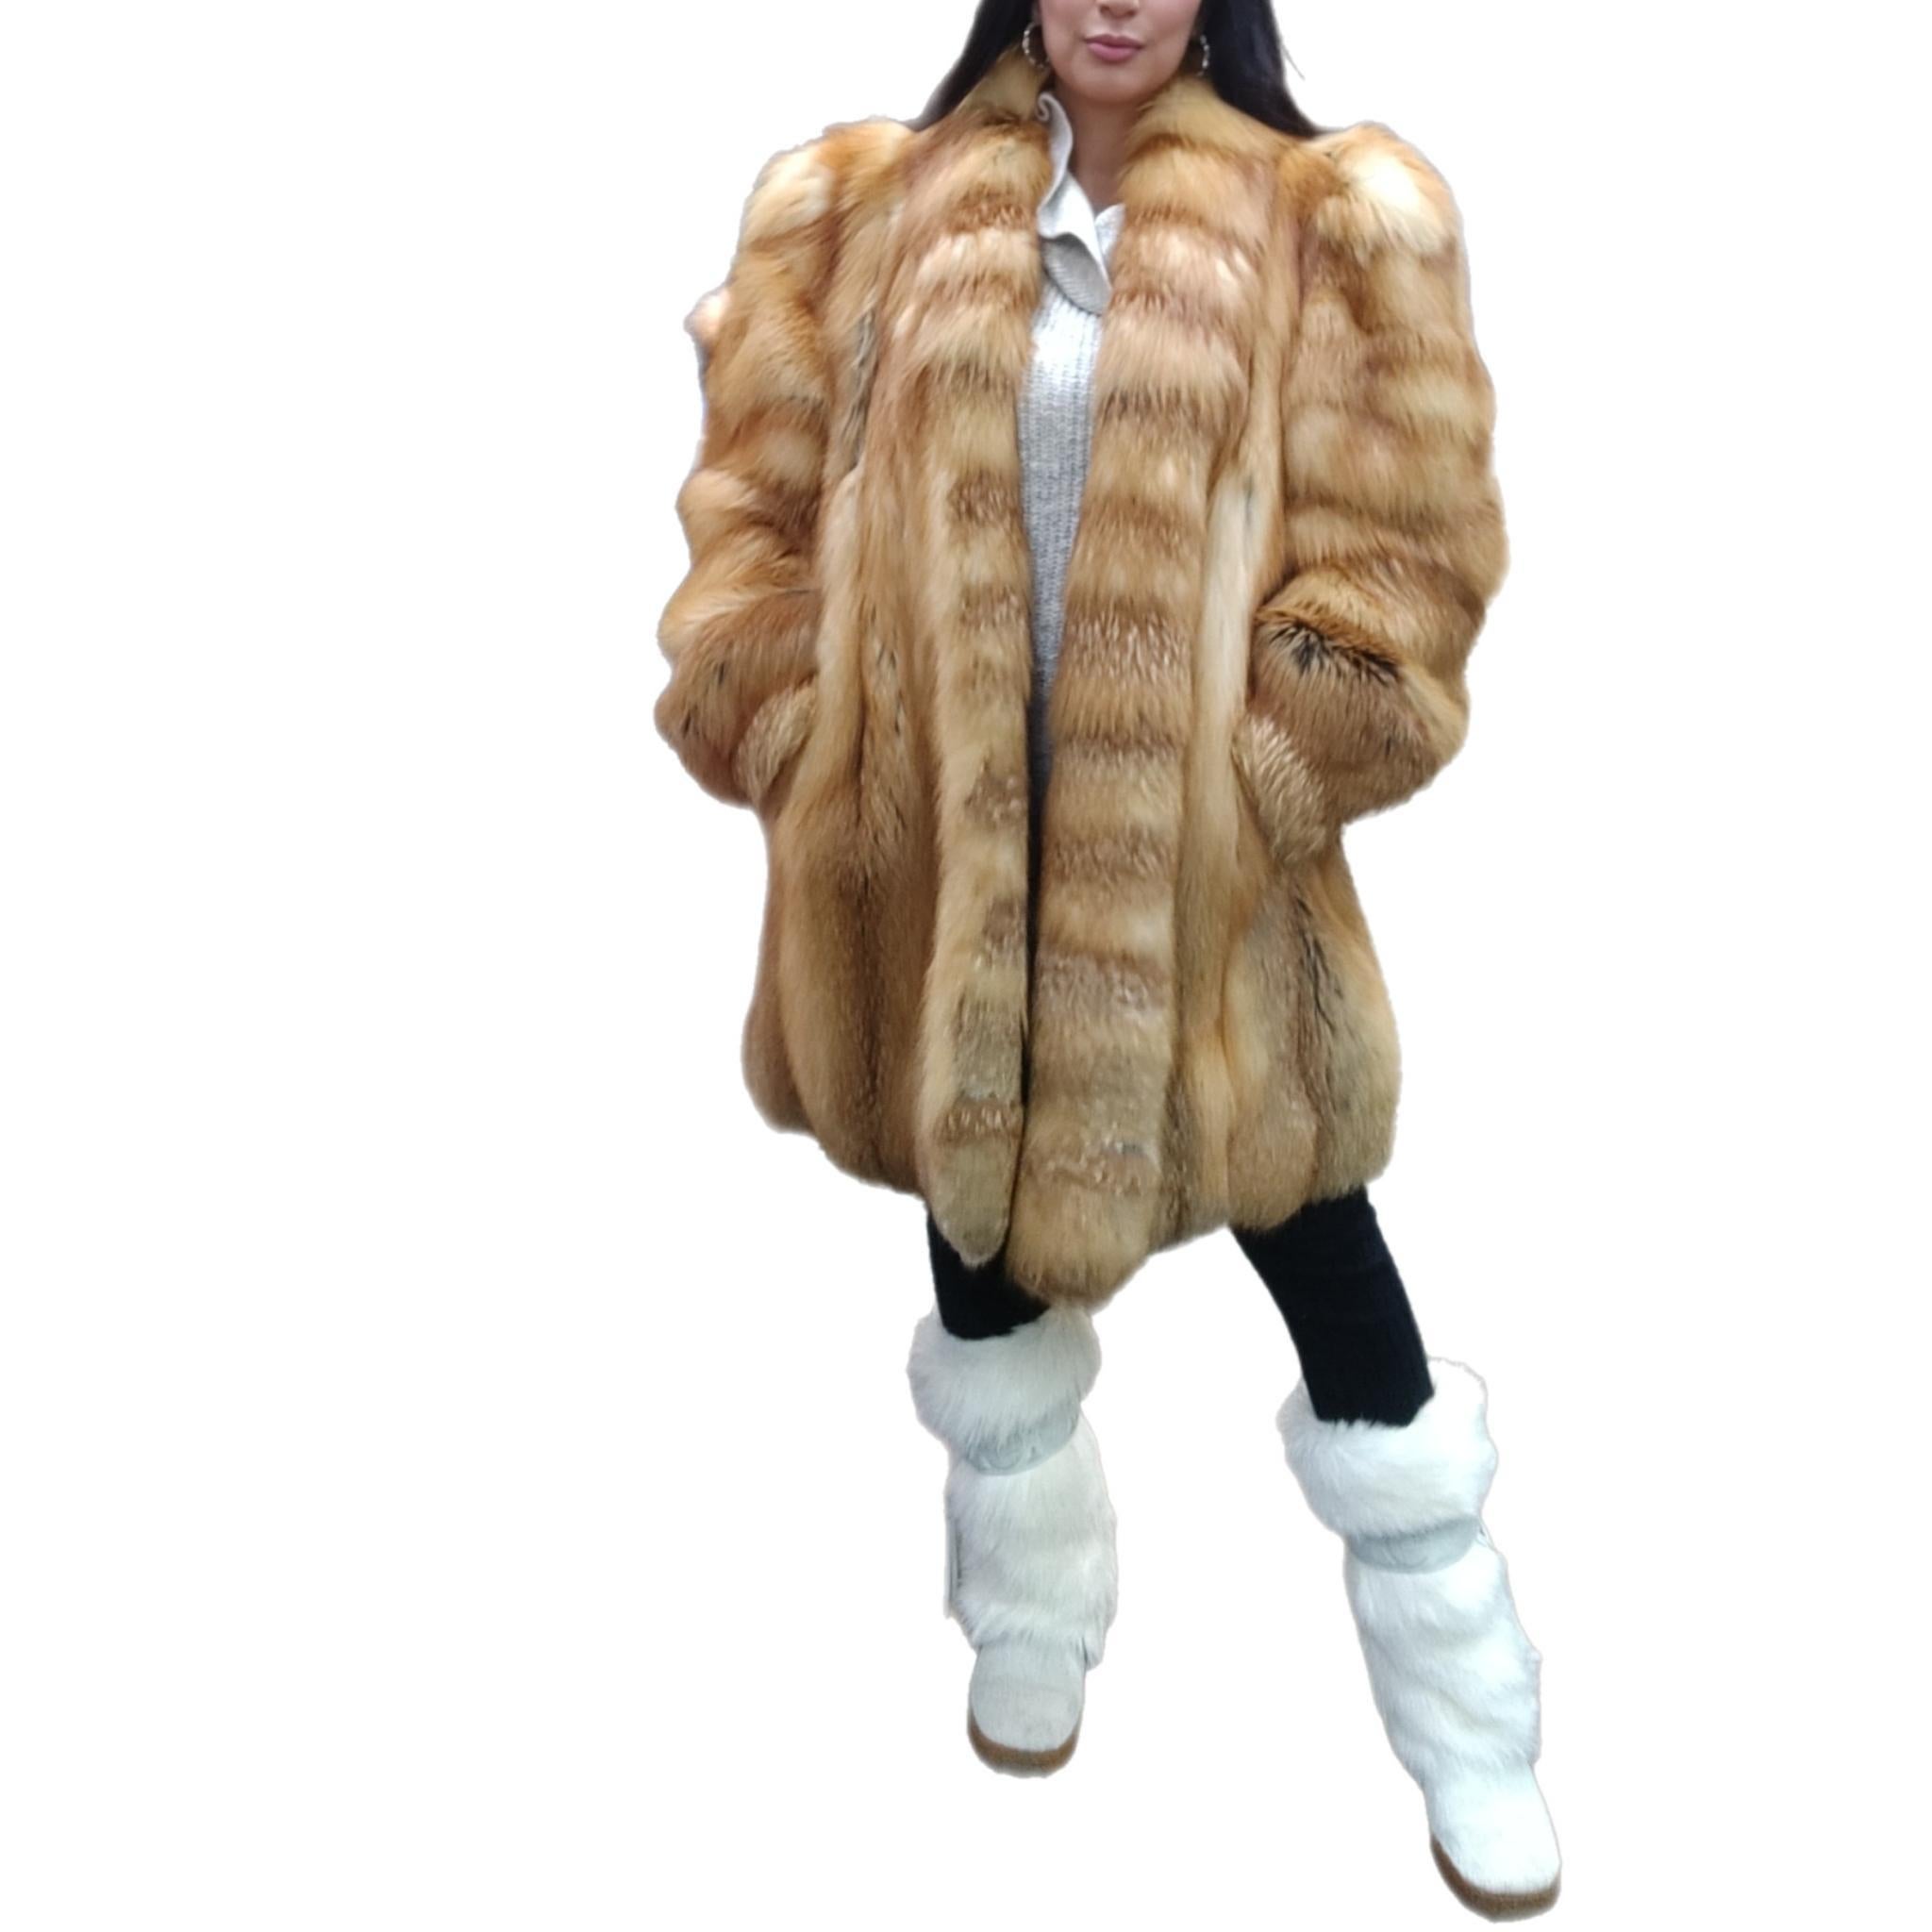 ~Manteau en fourrure de renard roux inutilisé (Taille 12-14 - L) 

En matière de fourrure, Canada Majestic est la référence ultime en termes de qualité et de style. Ce superbe manteau de renard rouge est un classique avec son design de smoking et